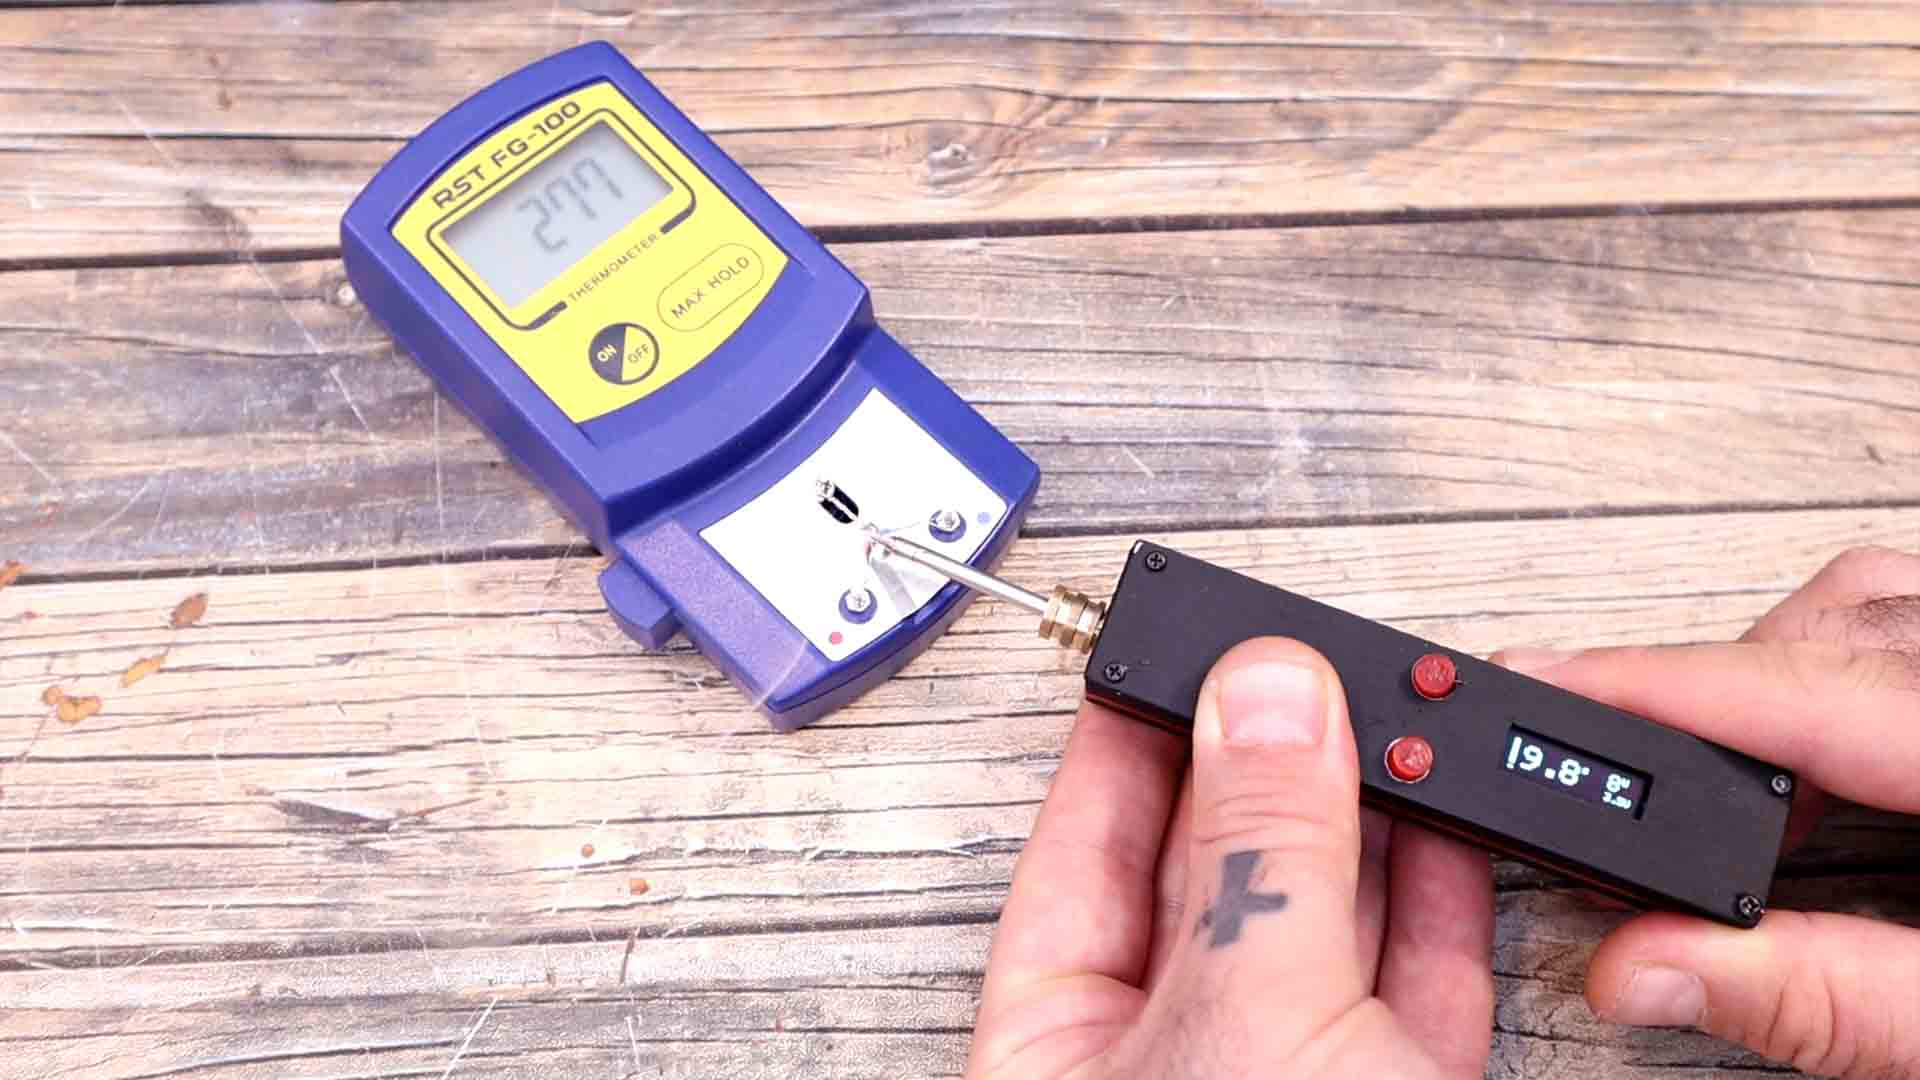 Arduino battery digital soldering iorn